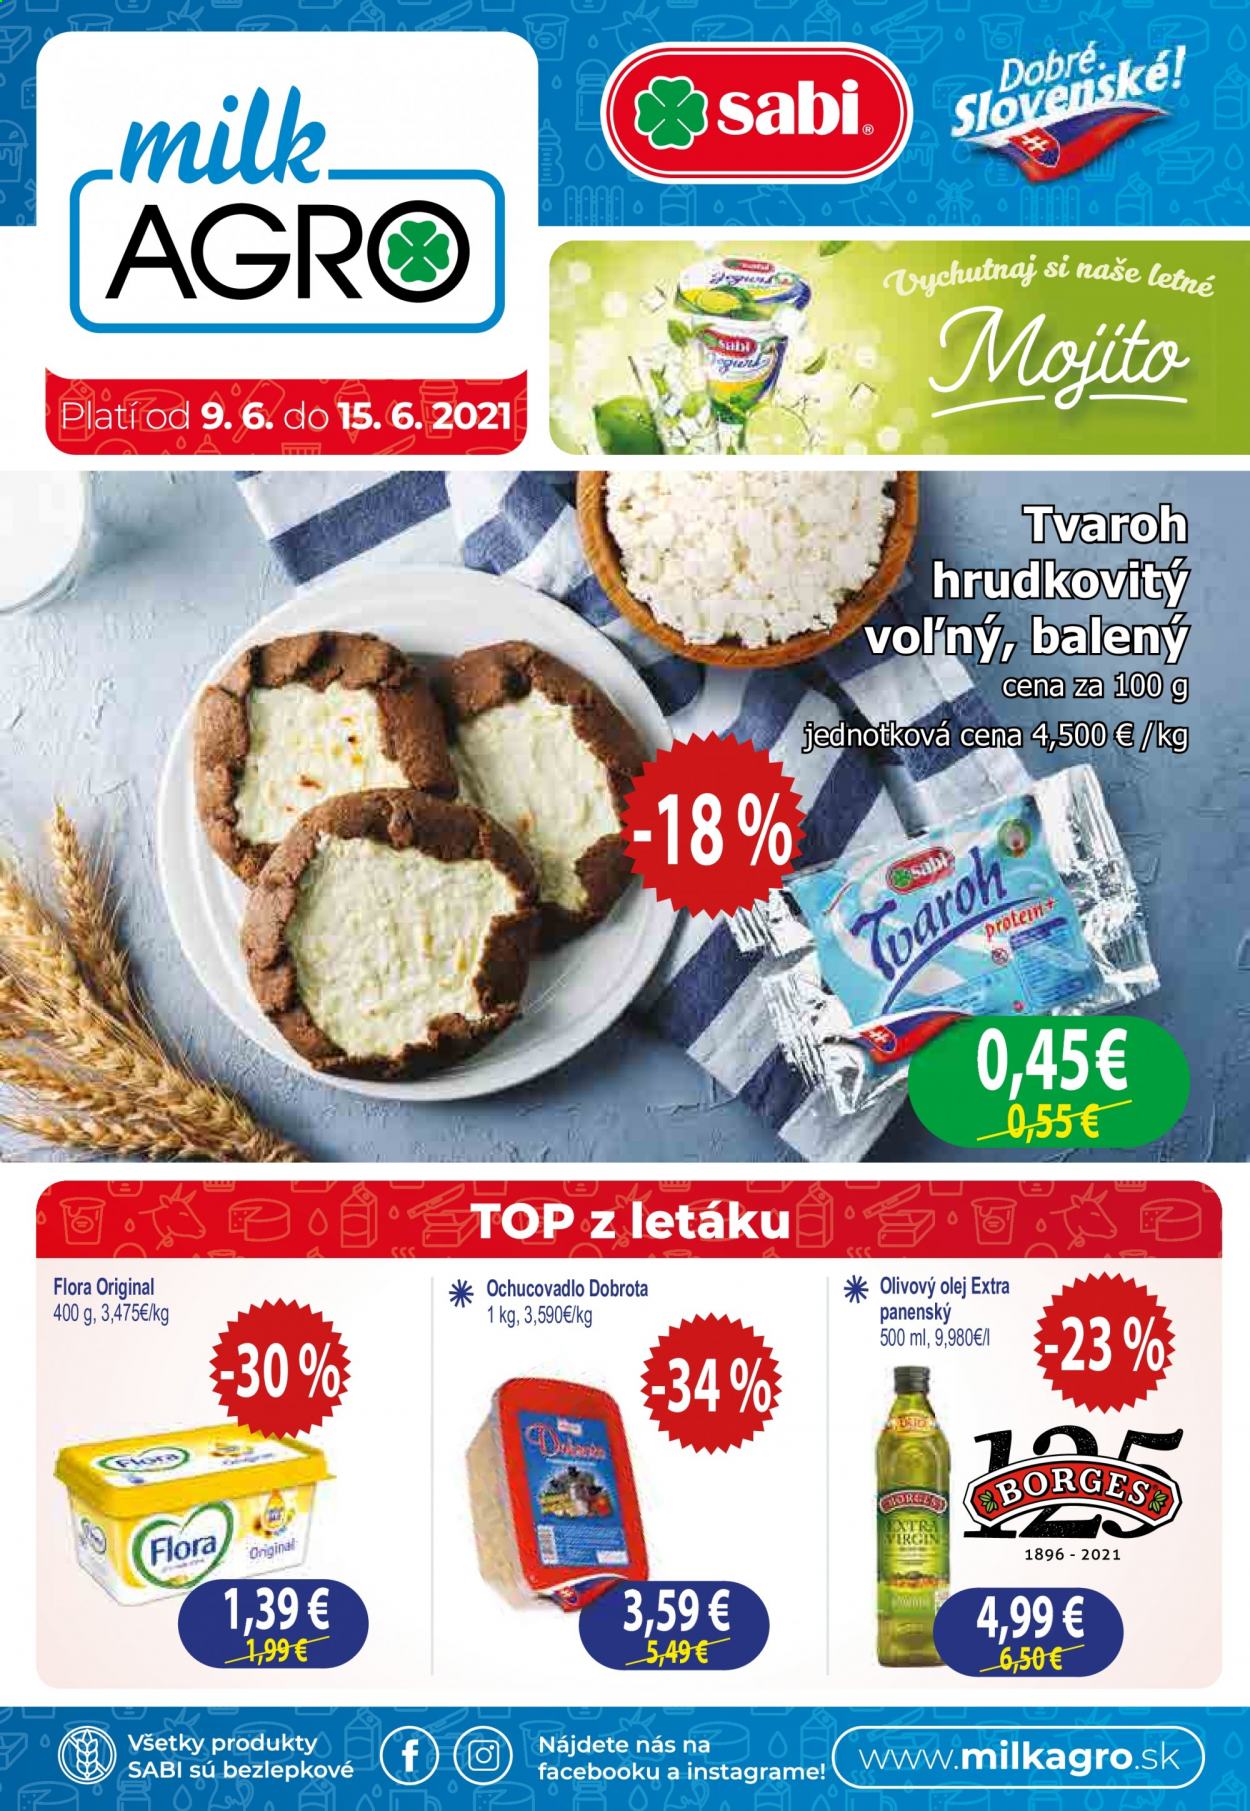 thumbnail - Leták Milk AGRO - 9.6.2021 - 15.6.2021 - Produkty v akcii - koreninová zmes, Flora, margarín, tvaroh, tvaroh hrudkovitý, olej, olivový olej. Strana 1.